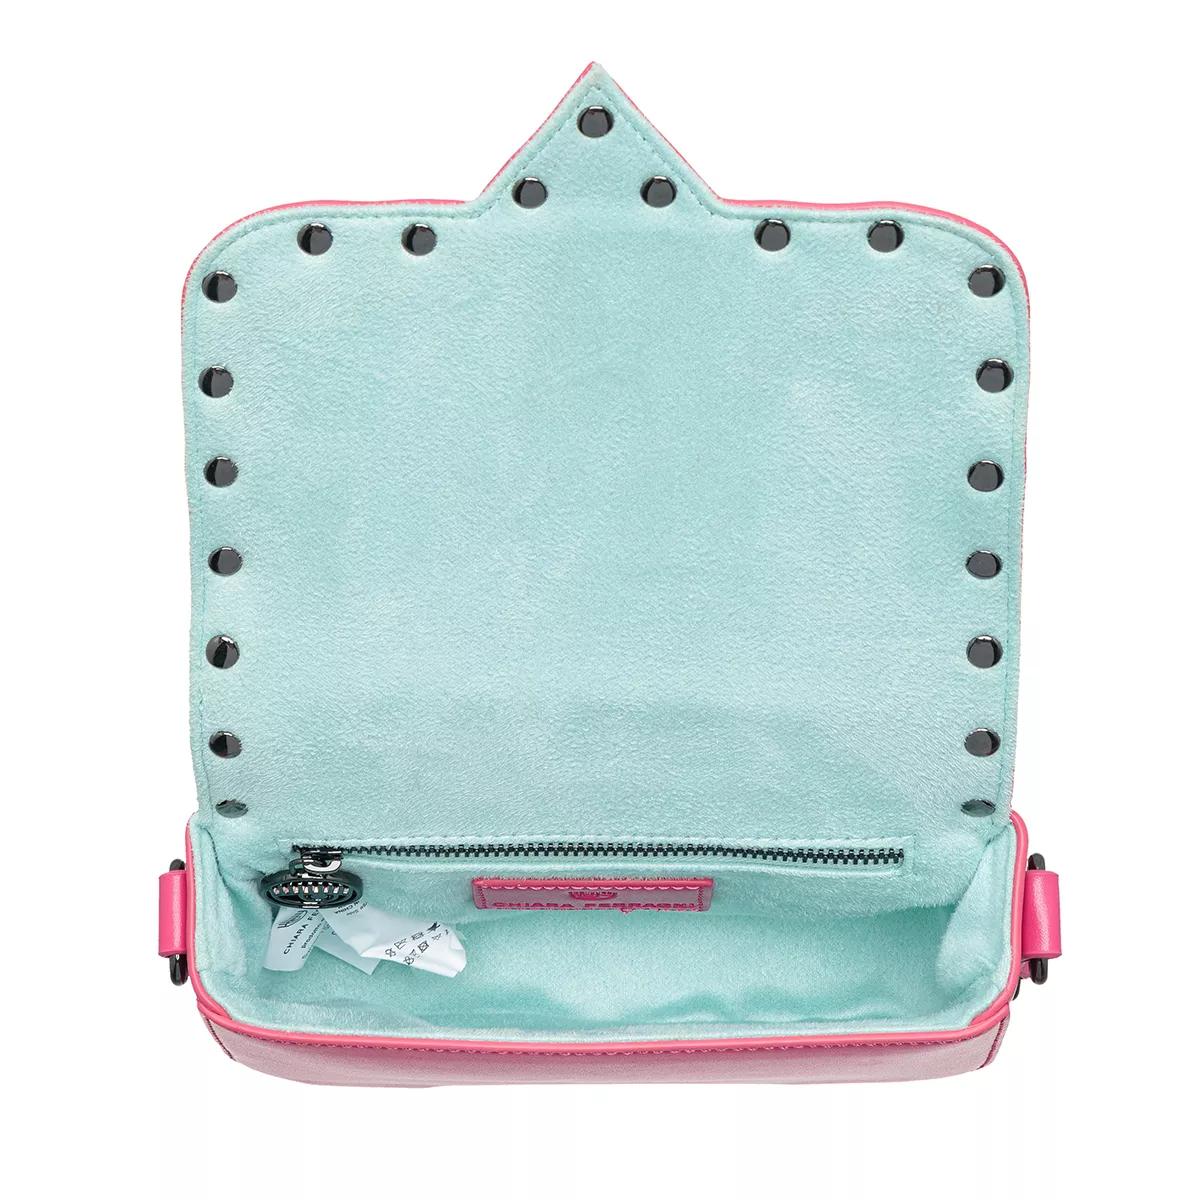 Chiara Ferragni Crossbody bags Range A Eyelike Bags Sketch 02 Bags in roze